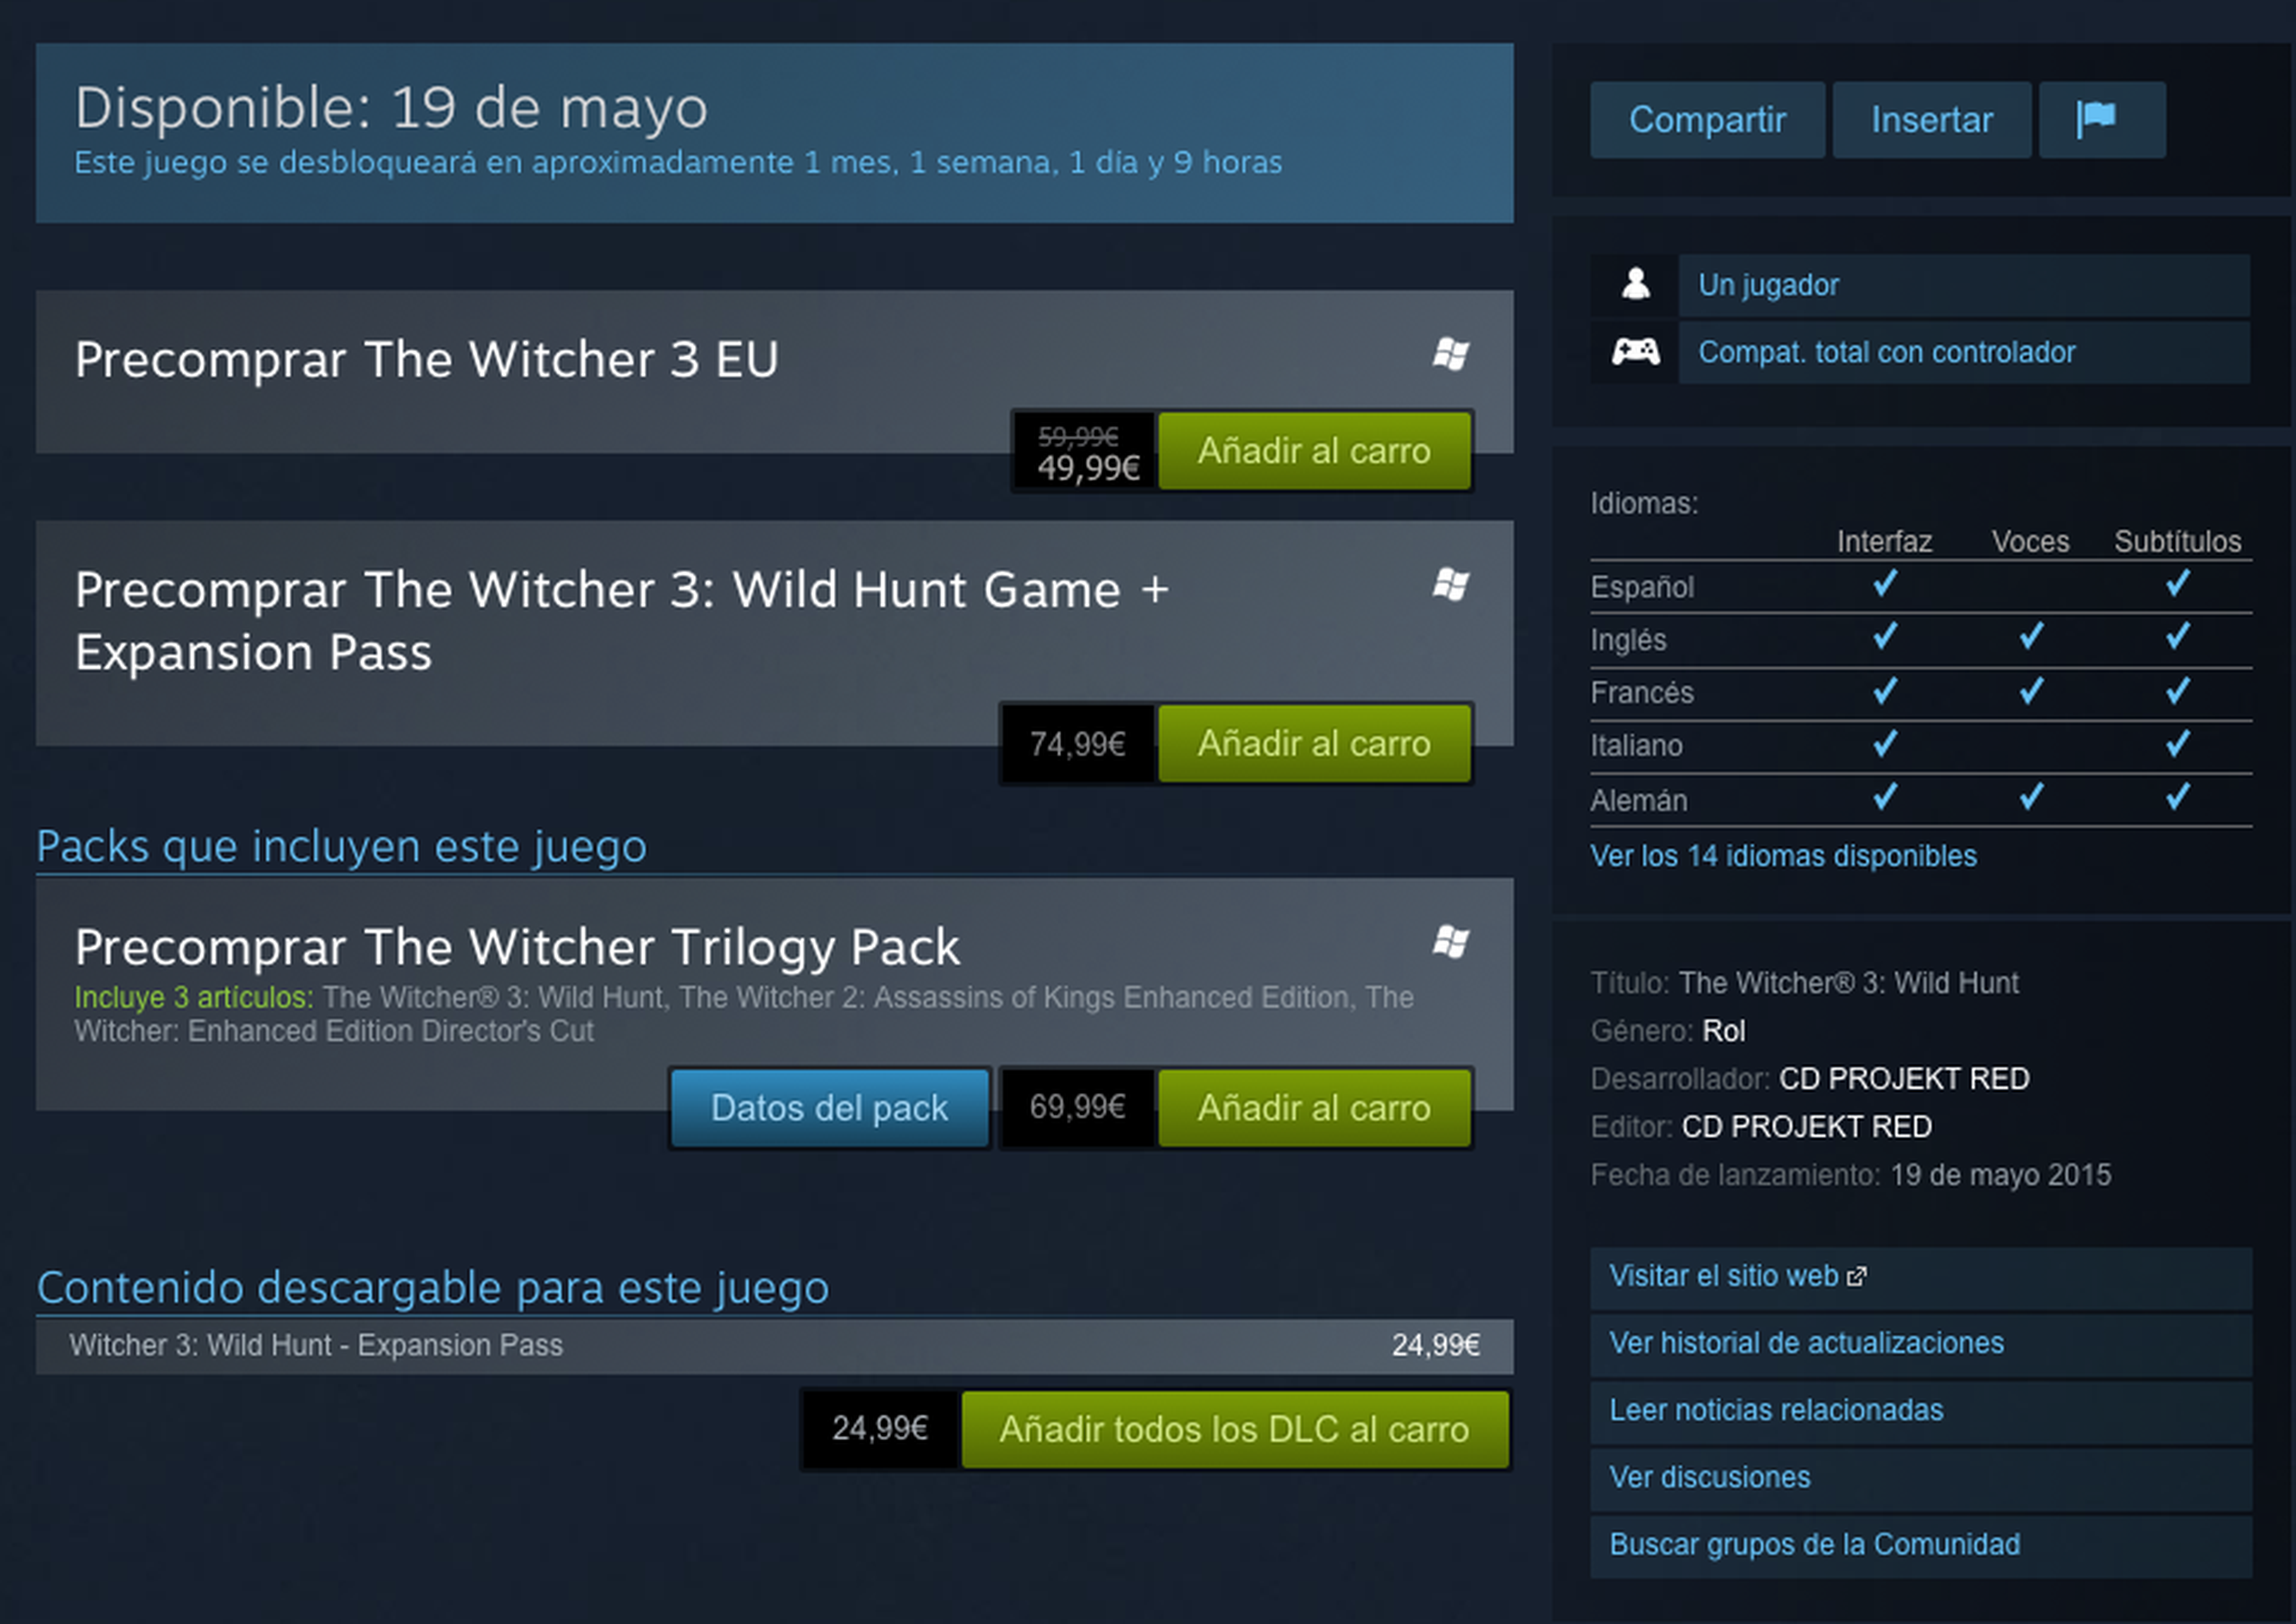 The Witcher 3: precio del pase de expansión